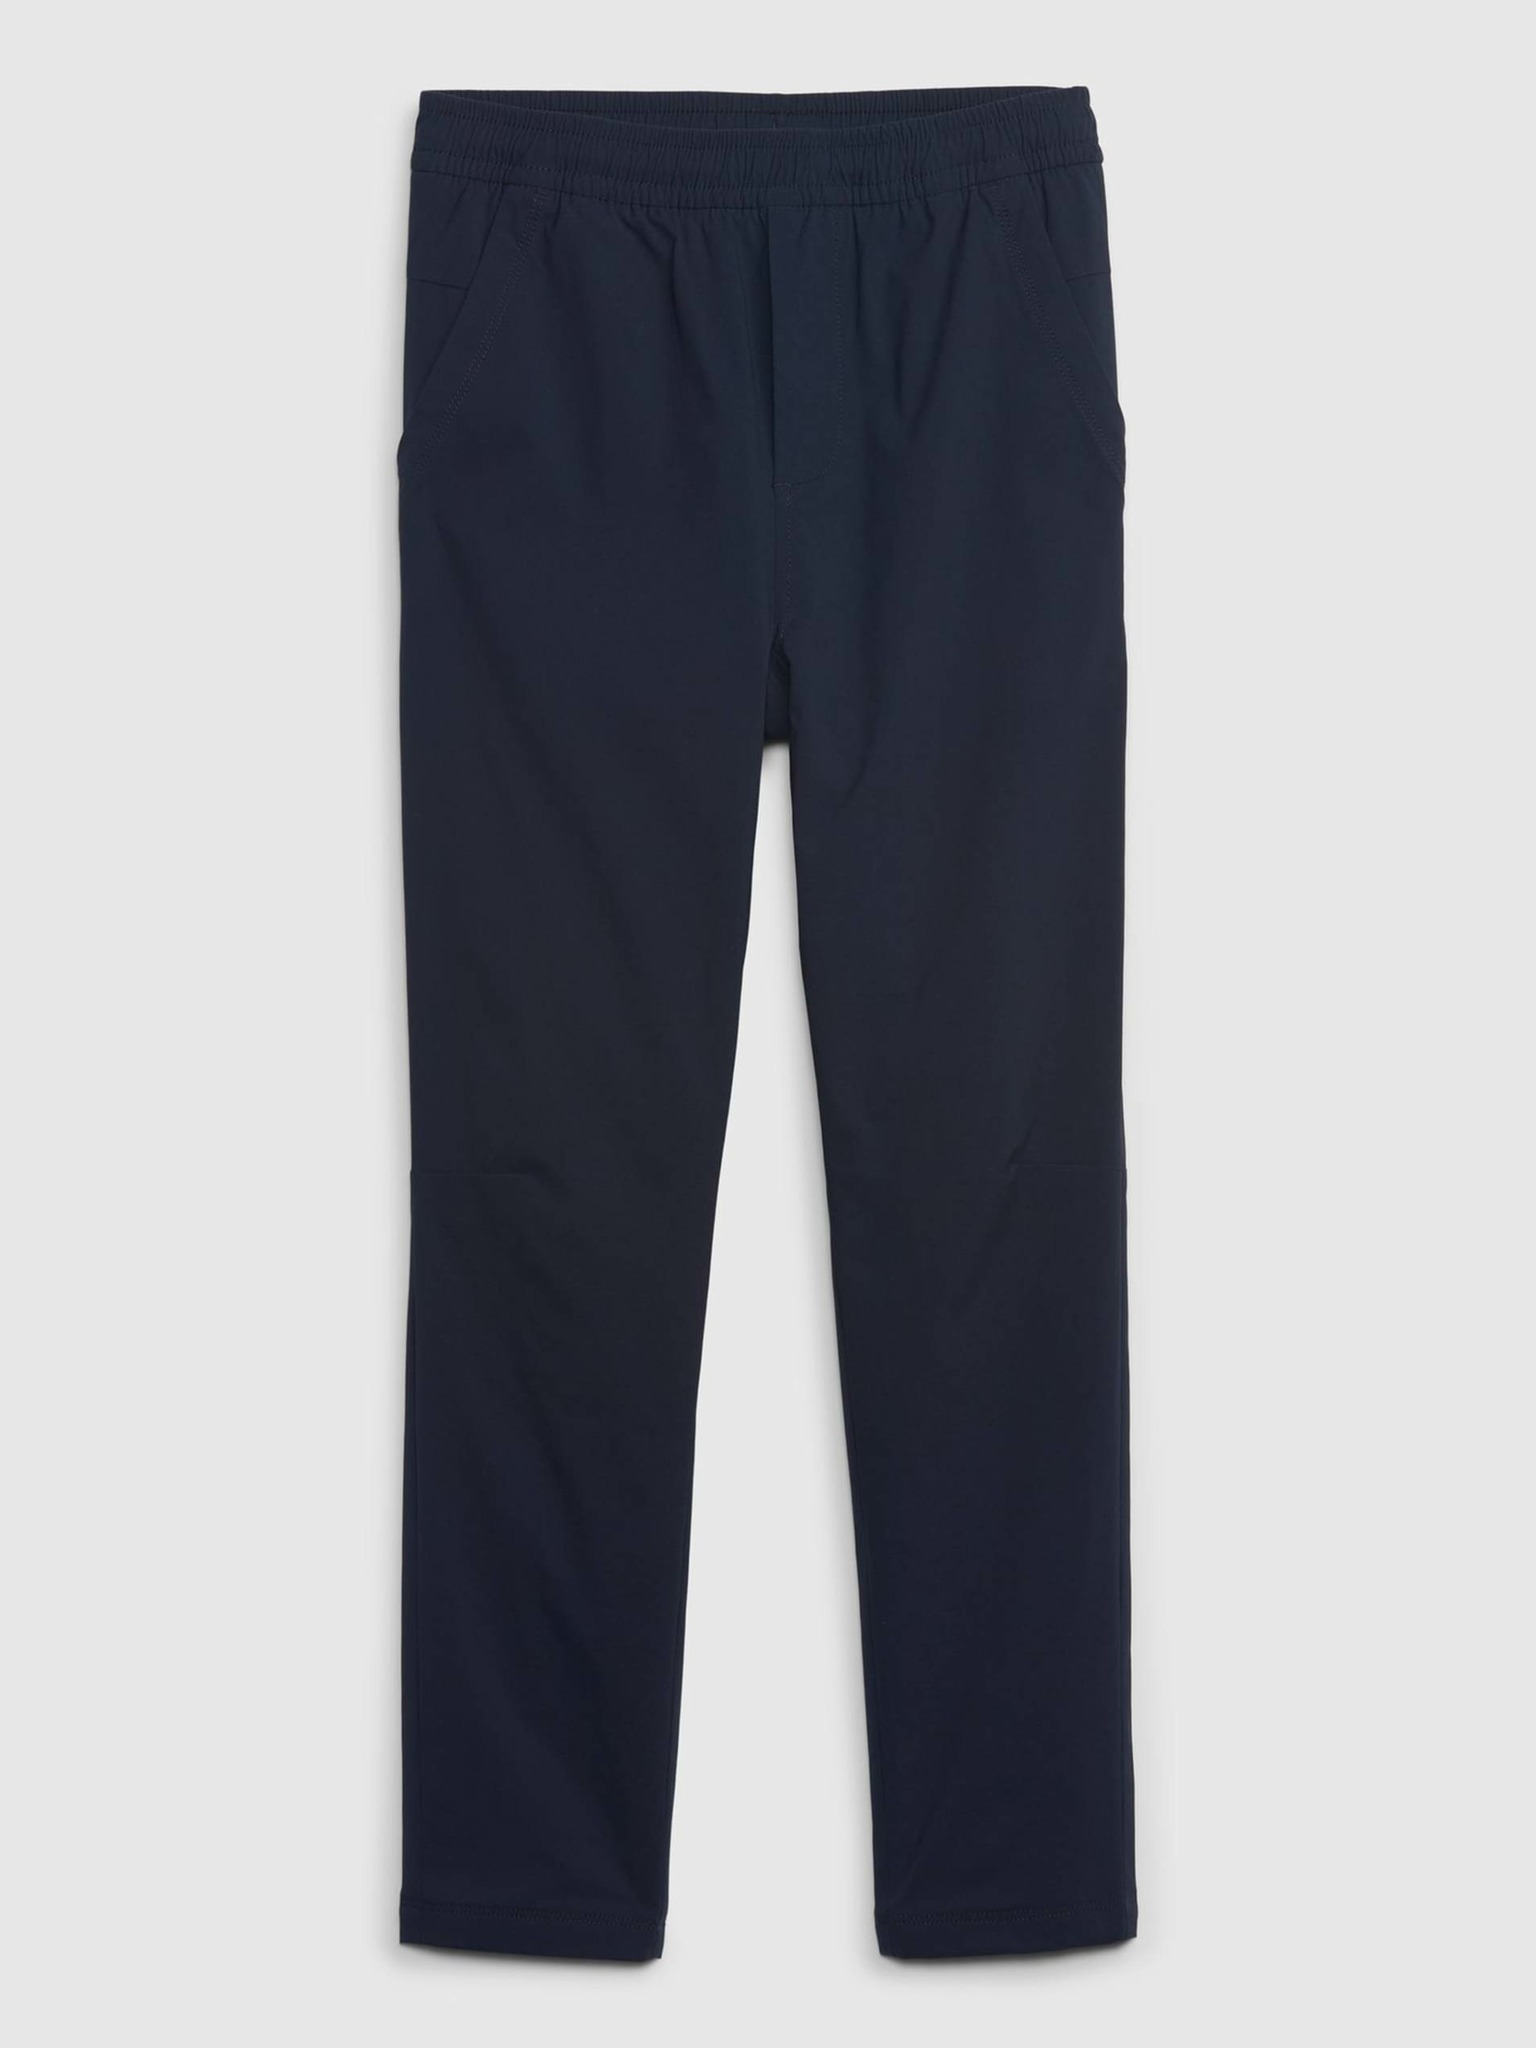 Fotografie Tmavě modré klučičí kalhoty zateplené GAP - 116-122